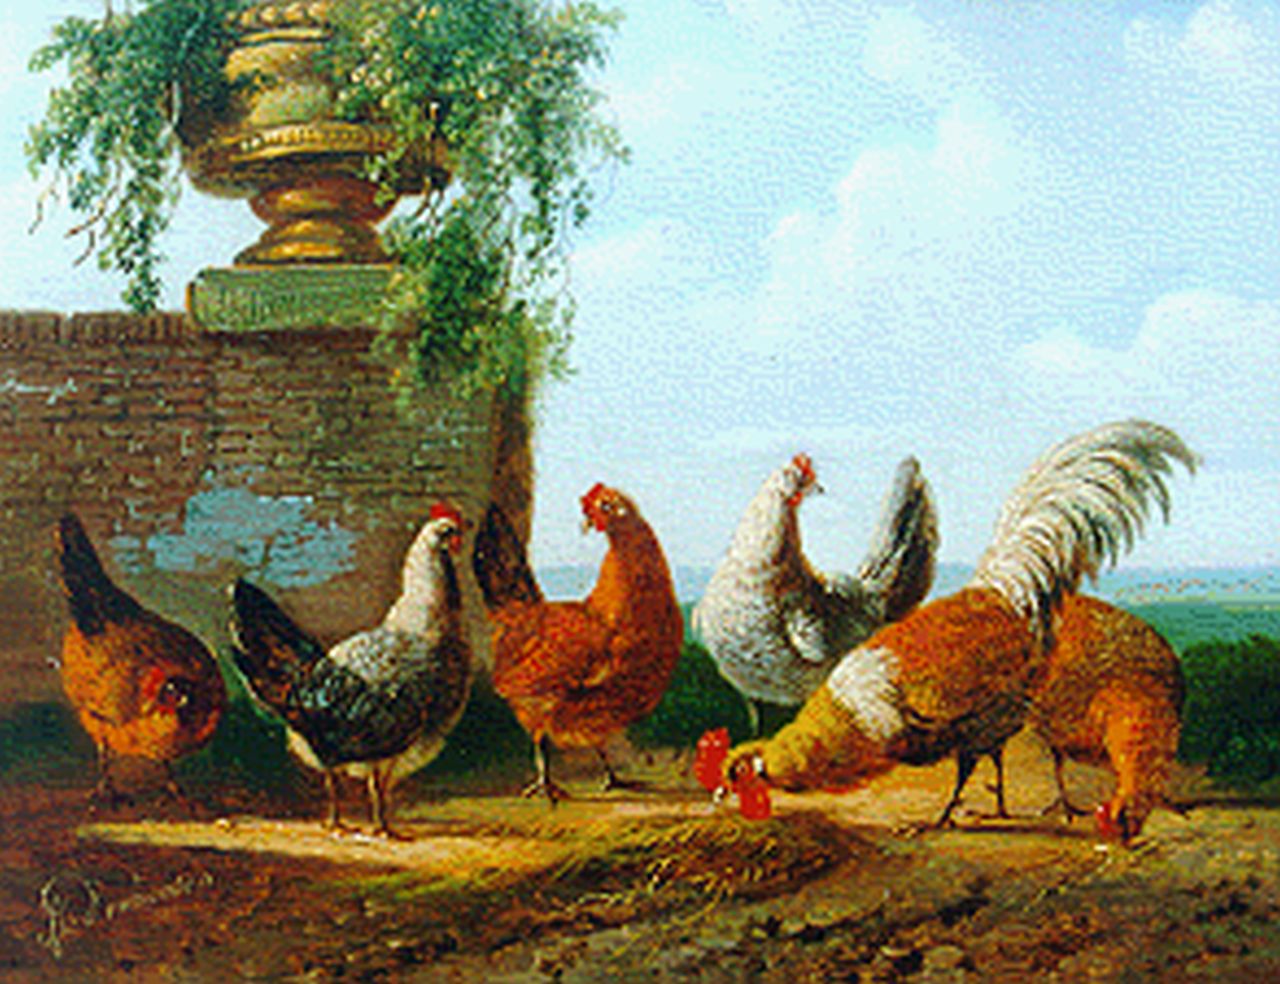 Verhoesen A.  | Albertus Verhoesen, Haan met vijf kippen, olieverf op paneel 12,5 x 15,5 cm, gesigneerd linksonder